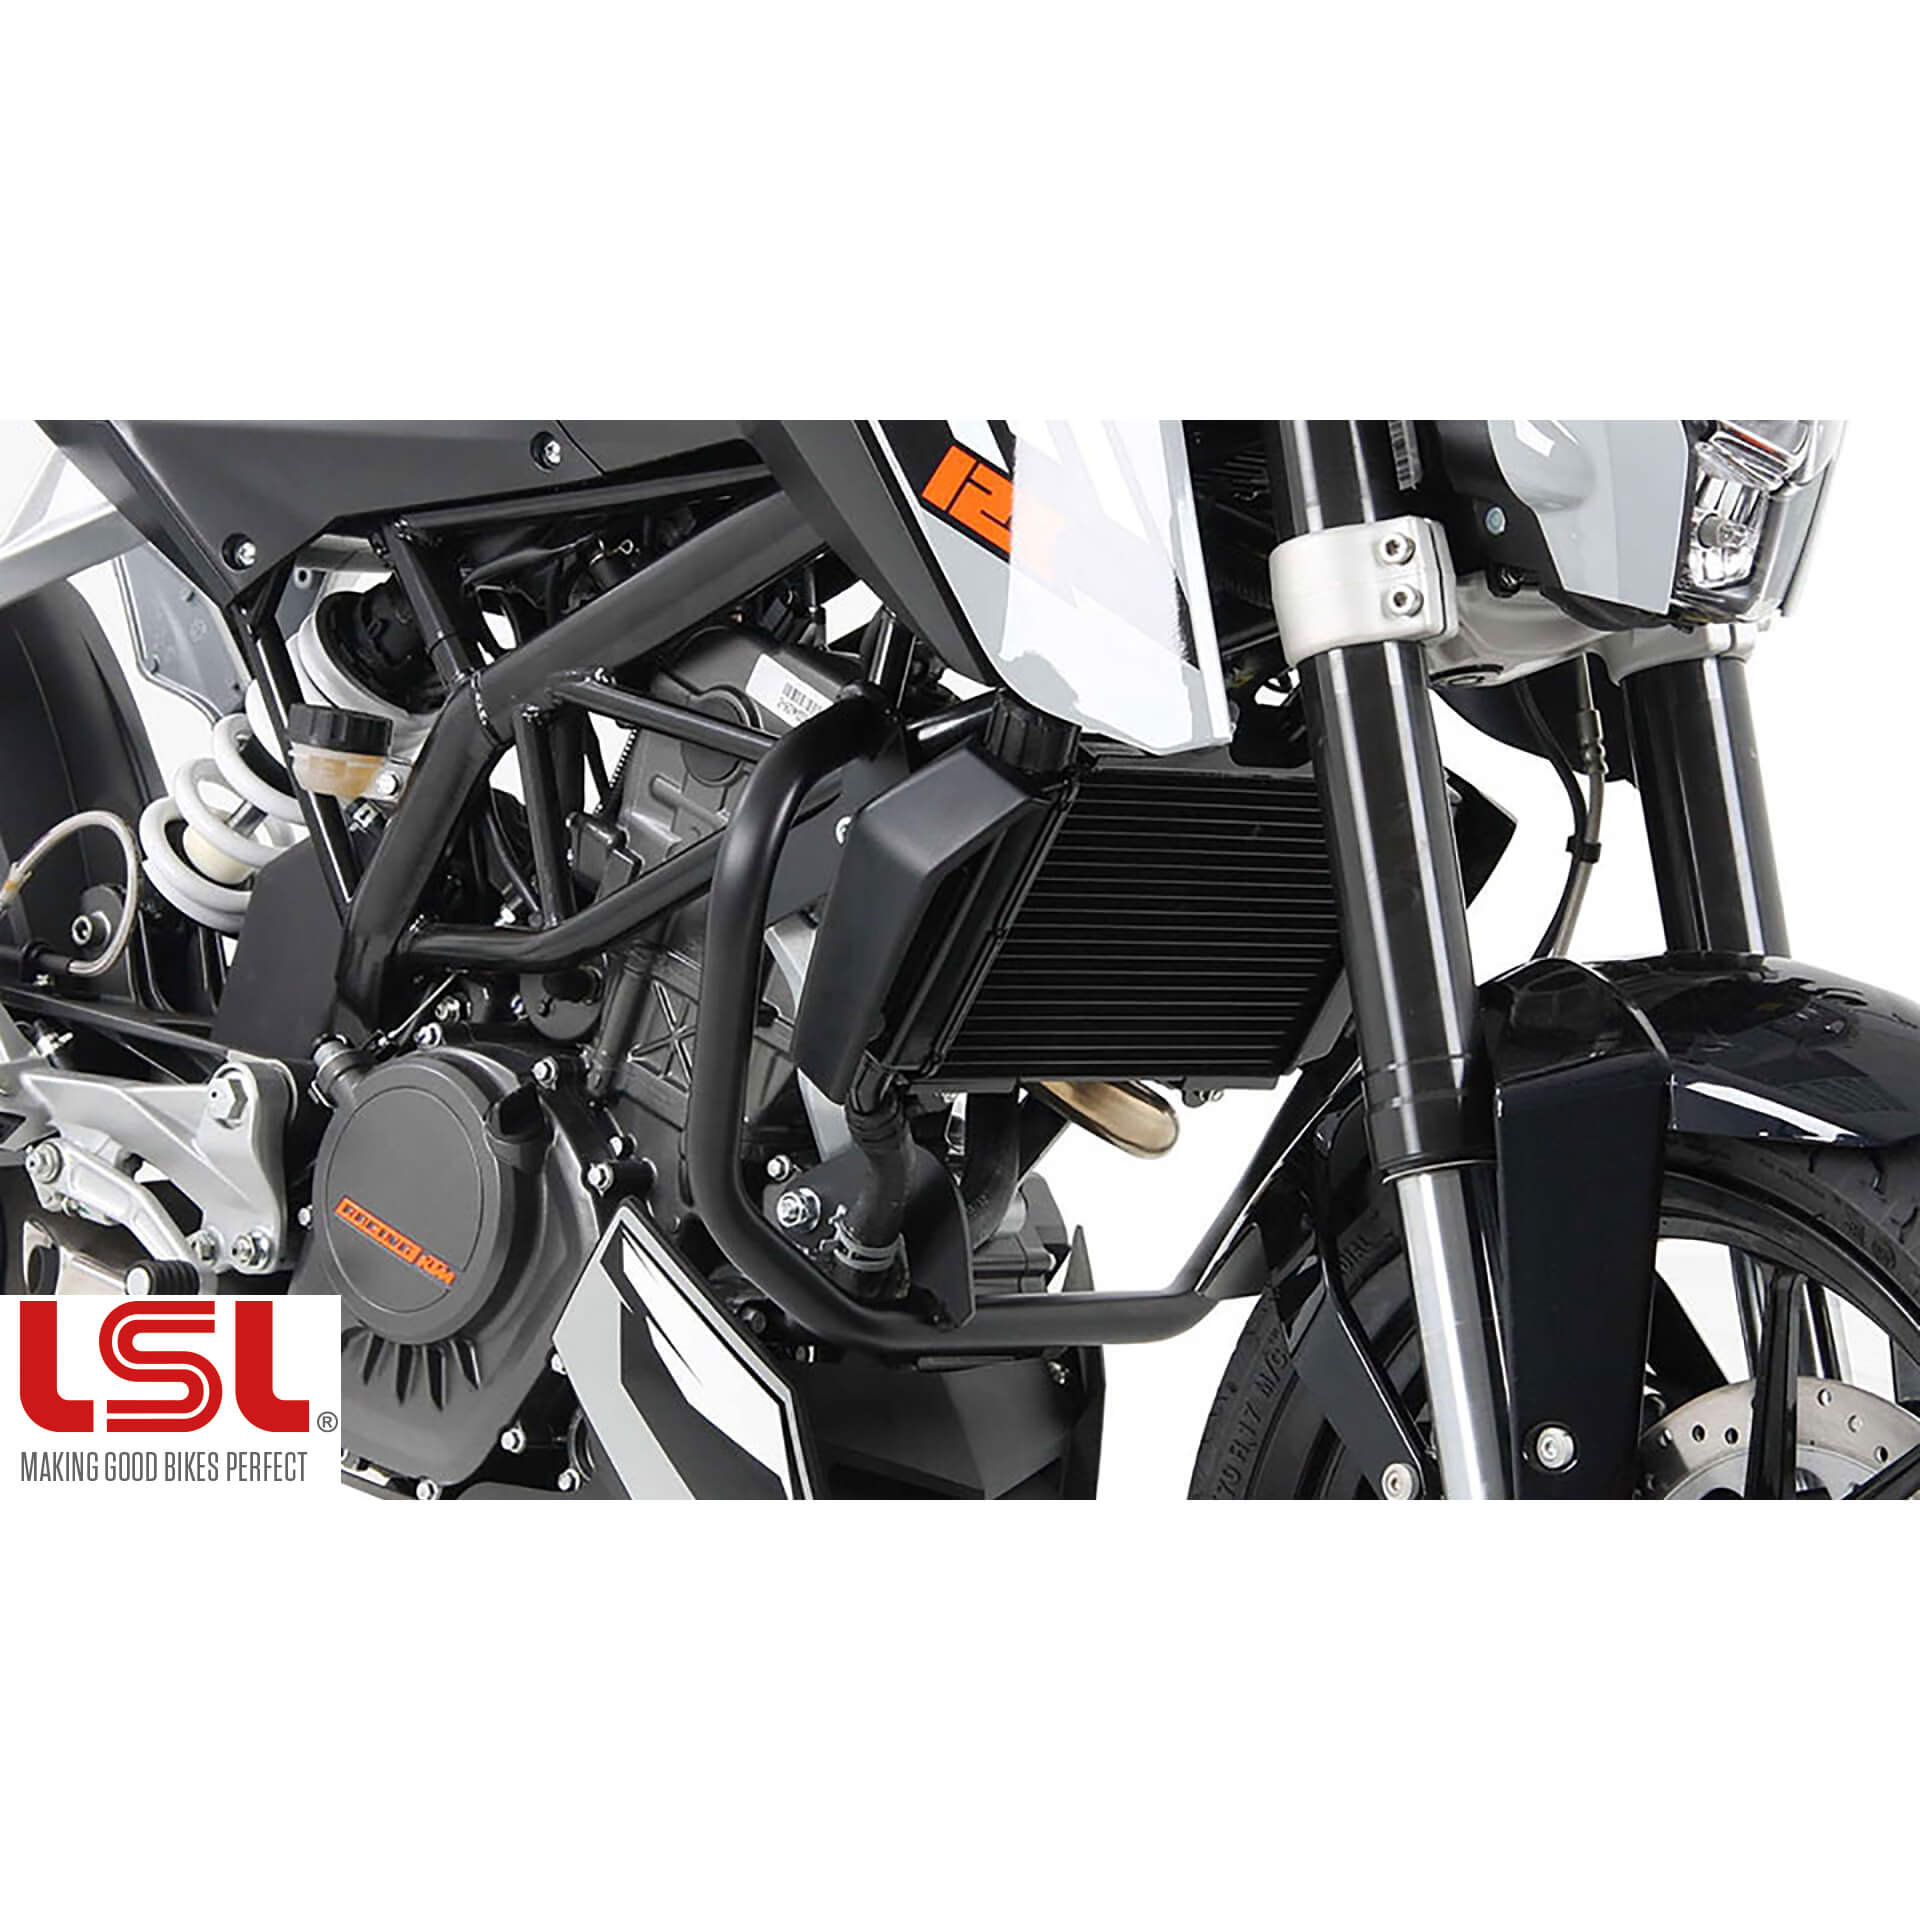 lsl Crash bar 125 / 200 Duke -2016, black